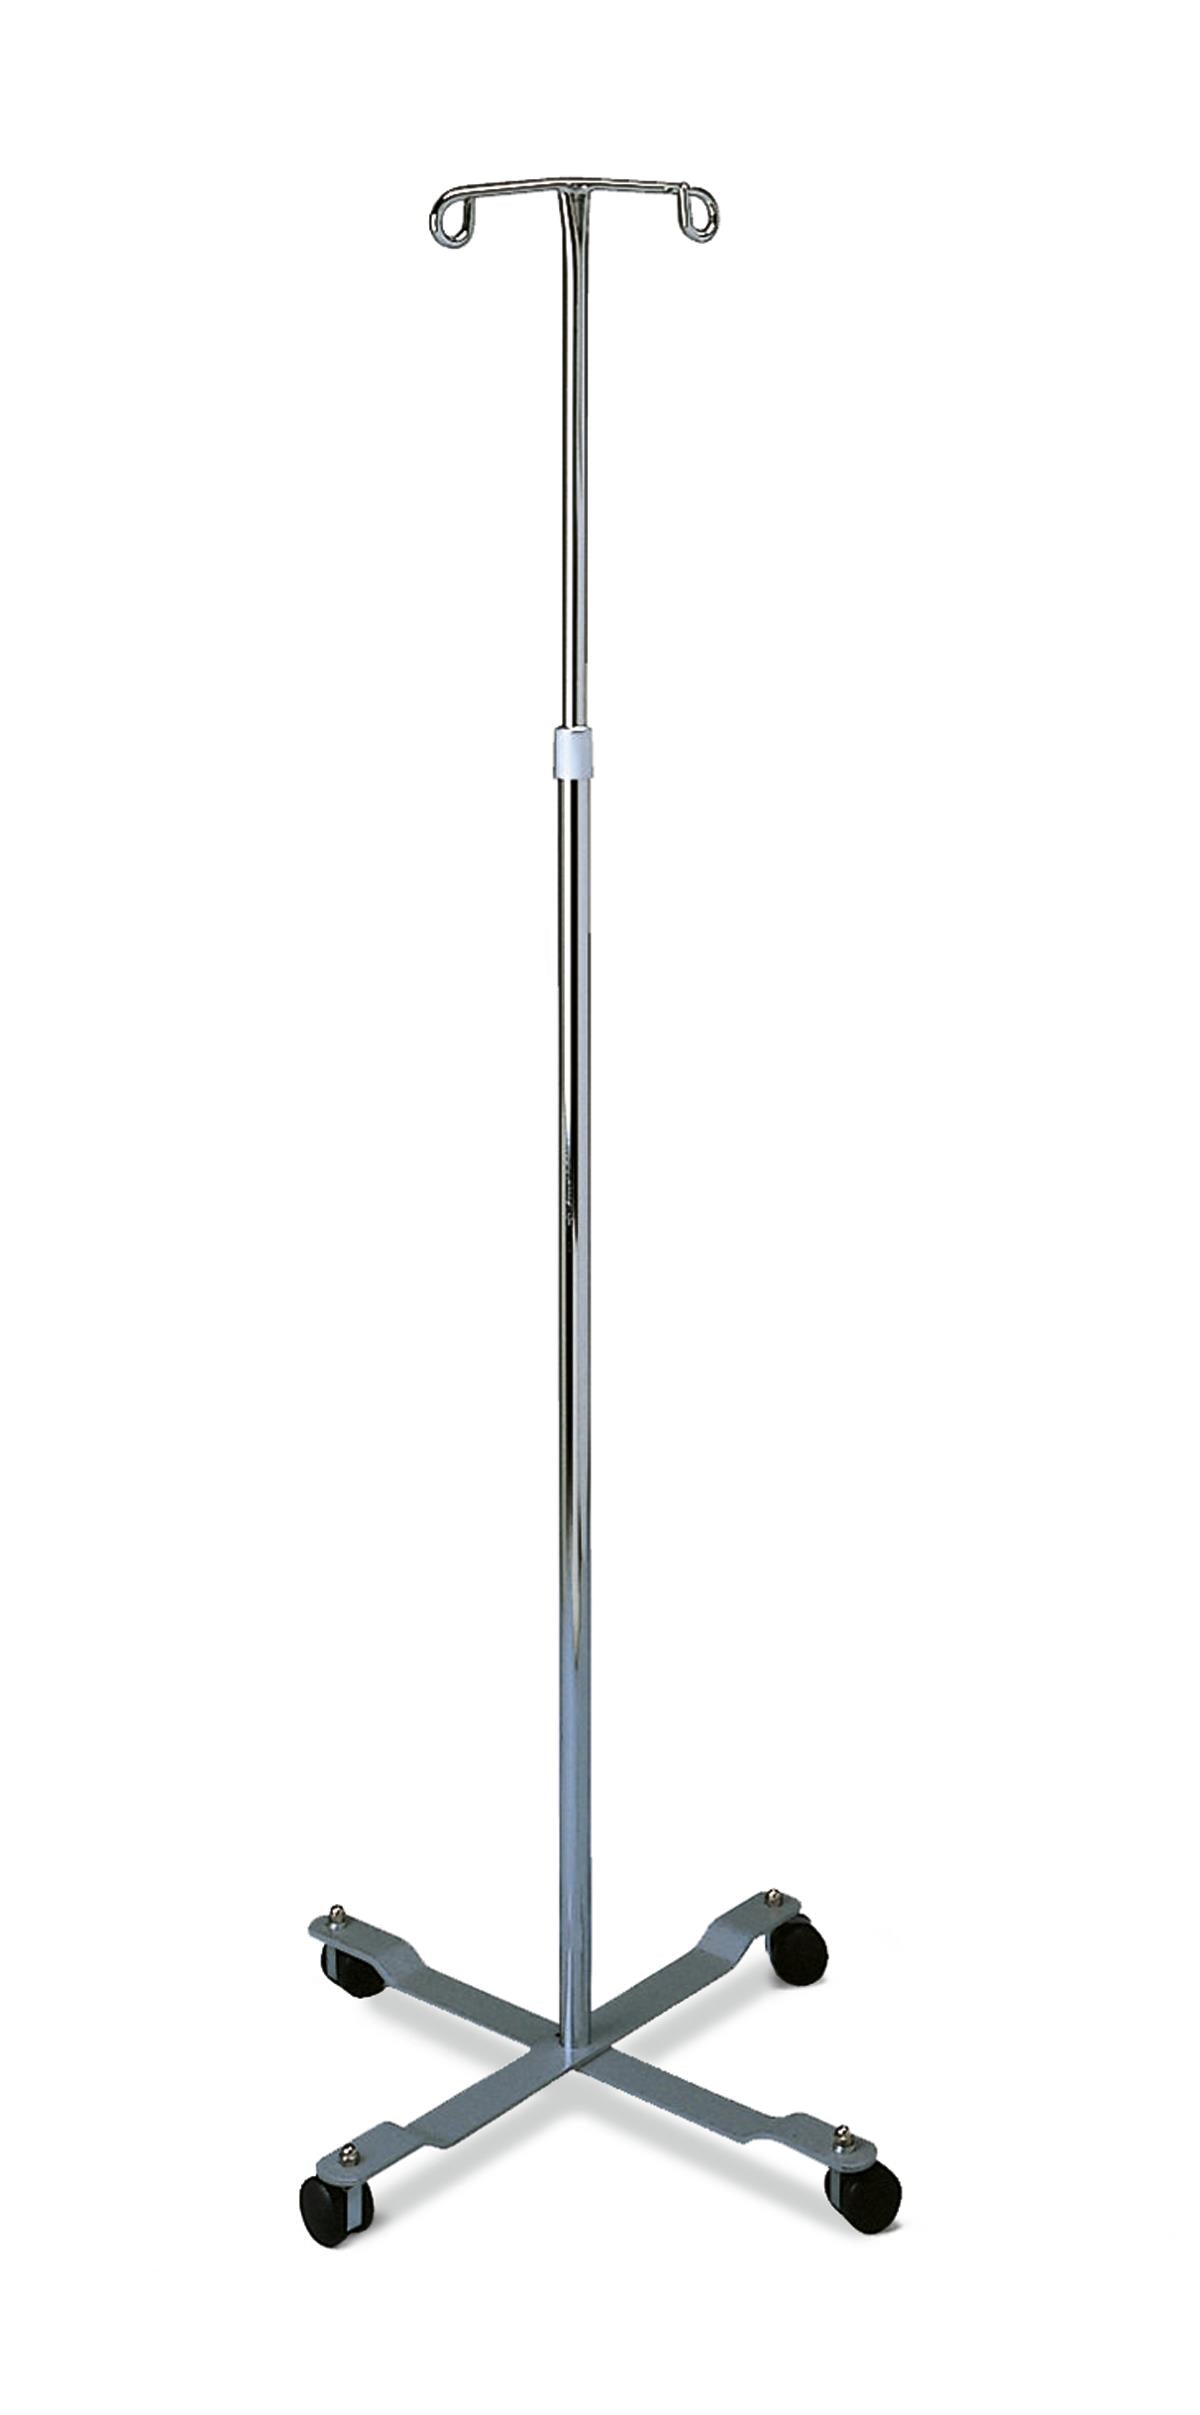 IV Pole w/ 2 hooks and 4 legs